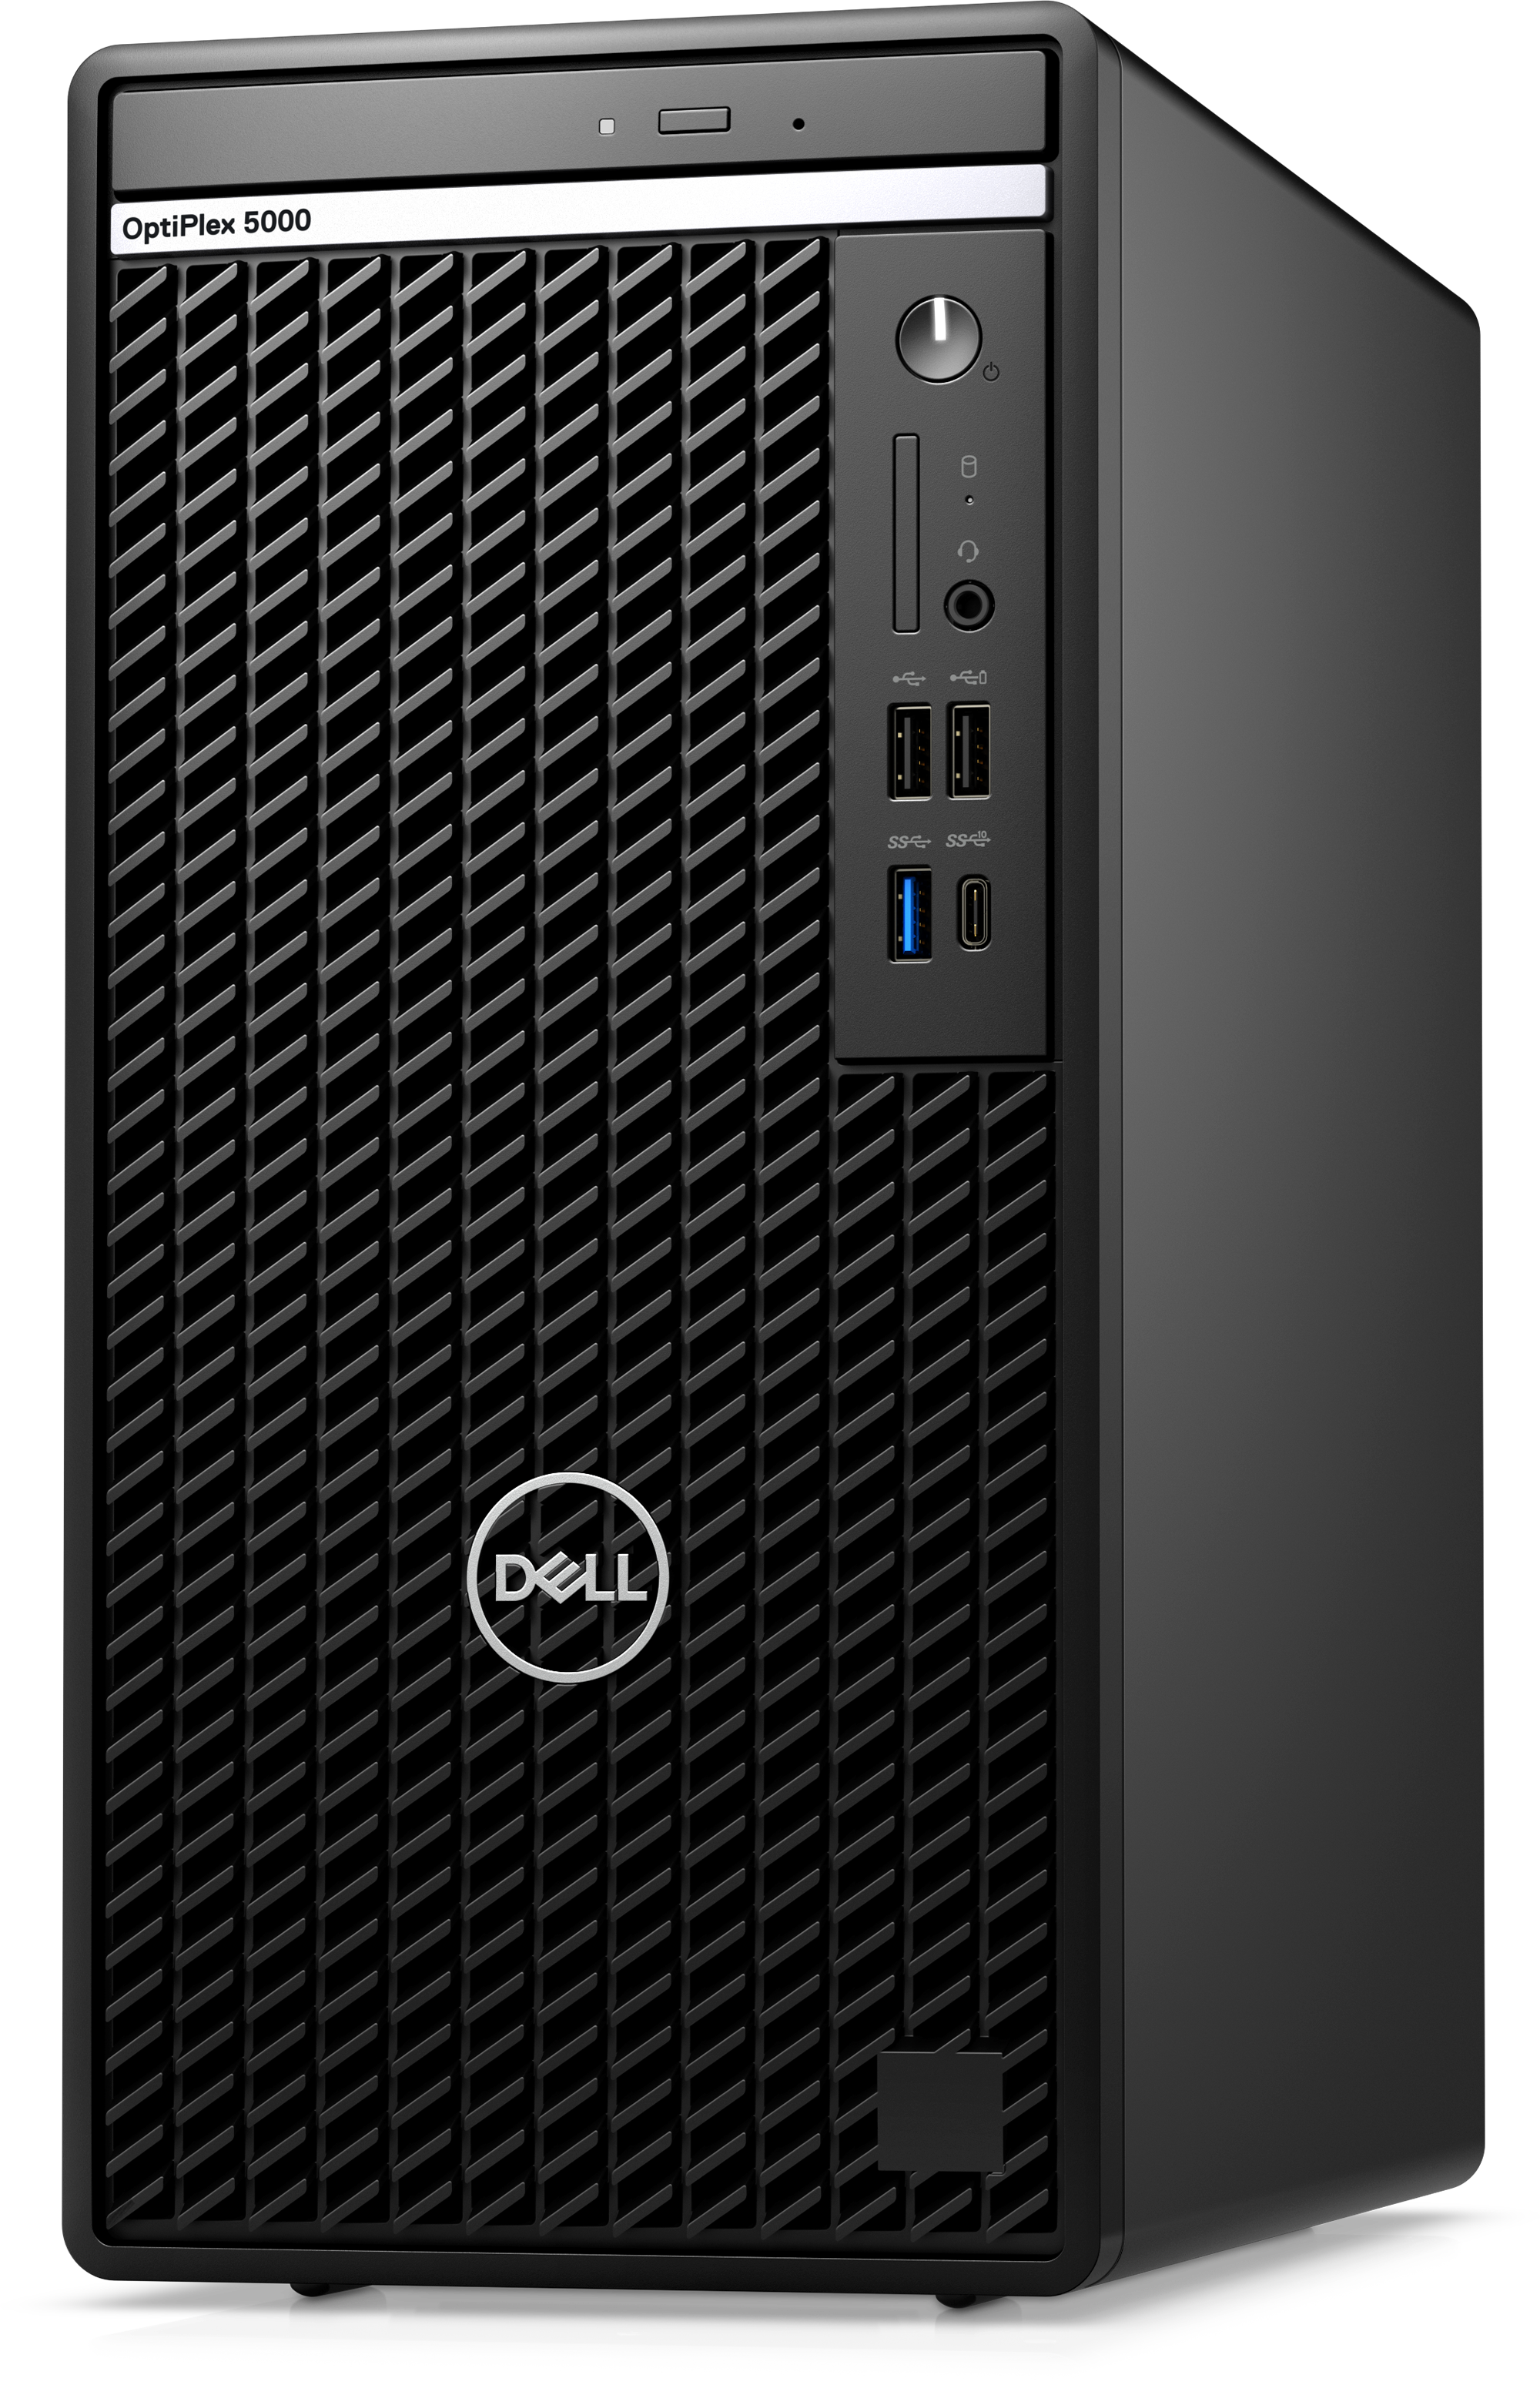 Dell Optiplex 5000MT 12th Generation Intel Core i5-12500